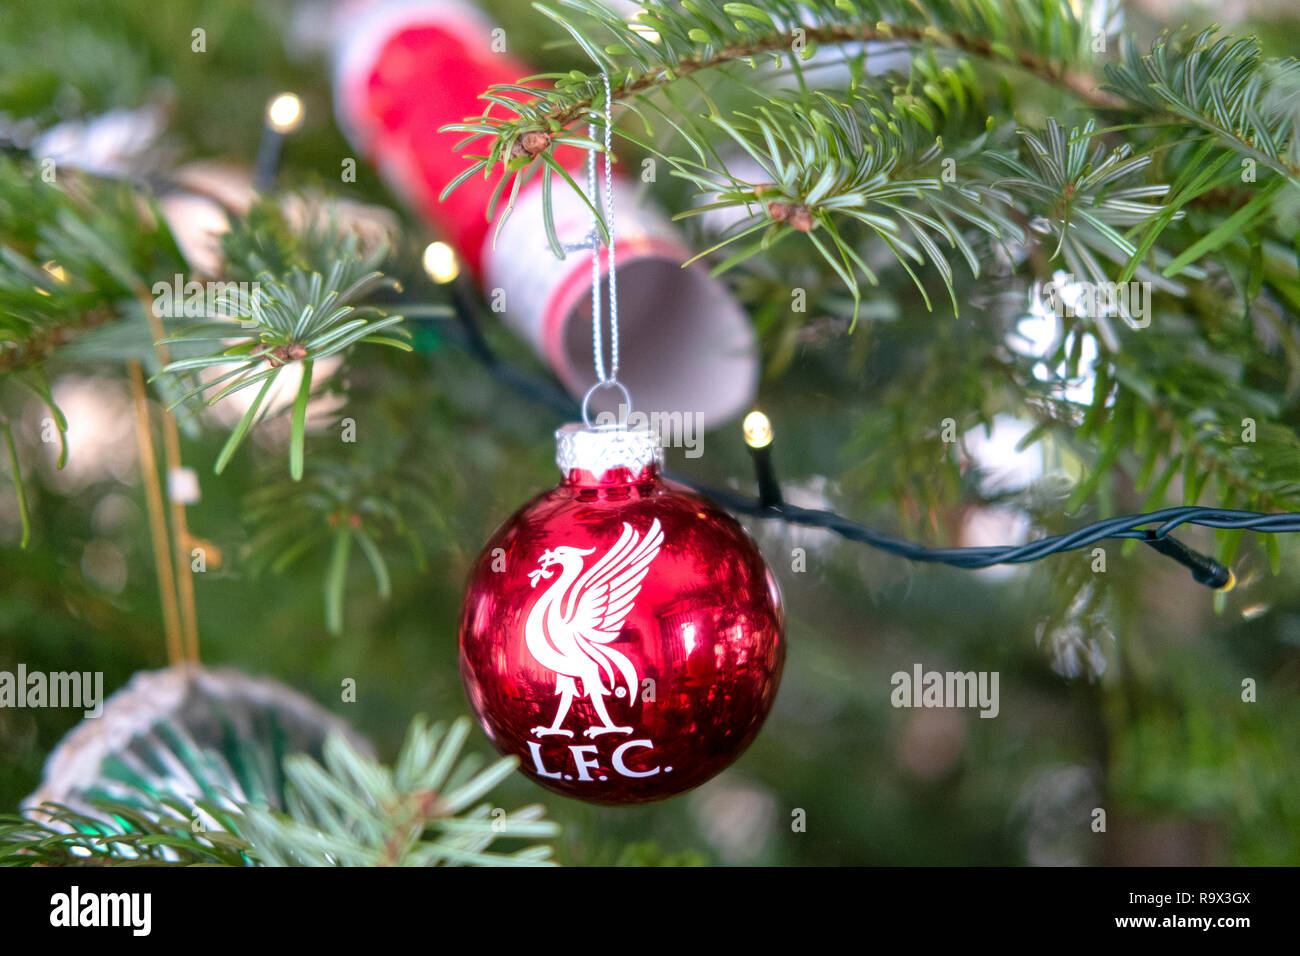 Árbol de navidad rojo decorado con adornos de Liverpool Fútbol club (LFC)  el logotipo en estrecha en un abeto Arbol de Navidad con luces y cracker  Fotografía de stock - Alamy